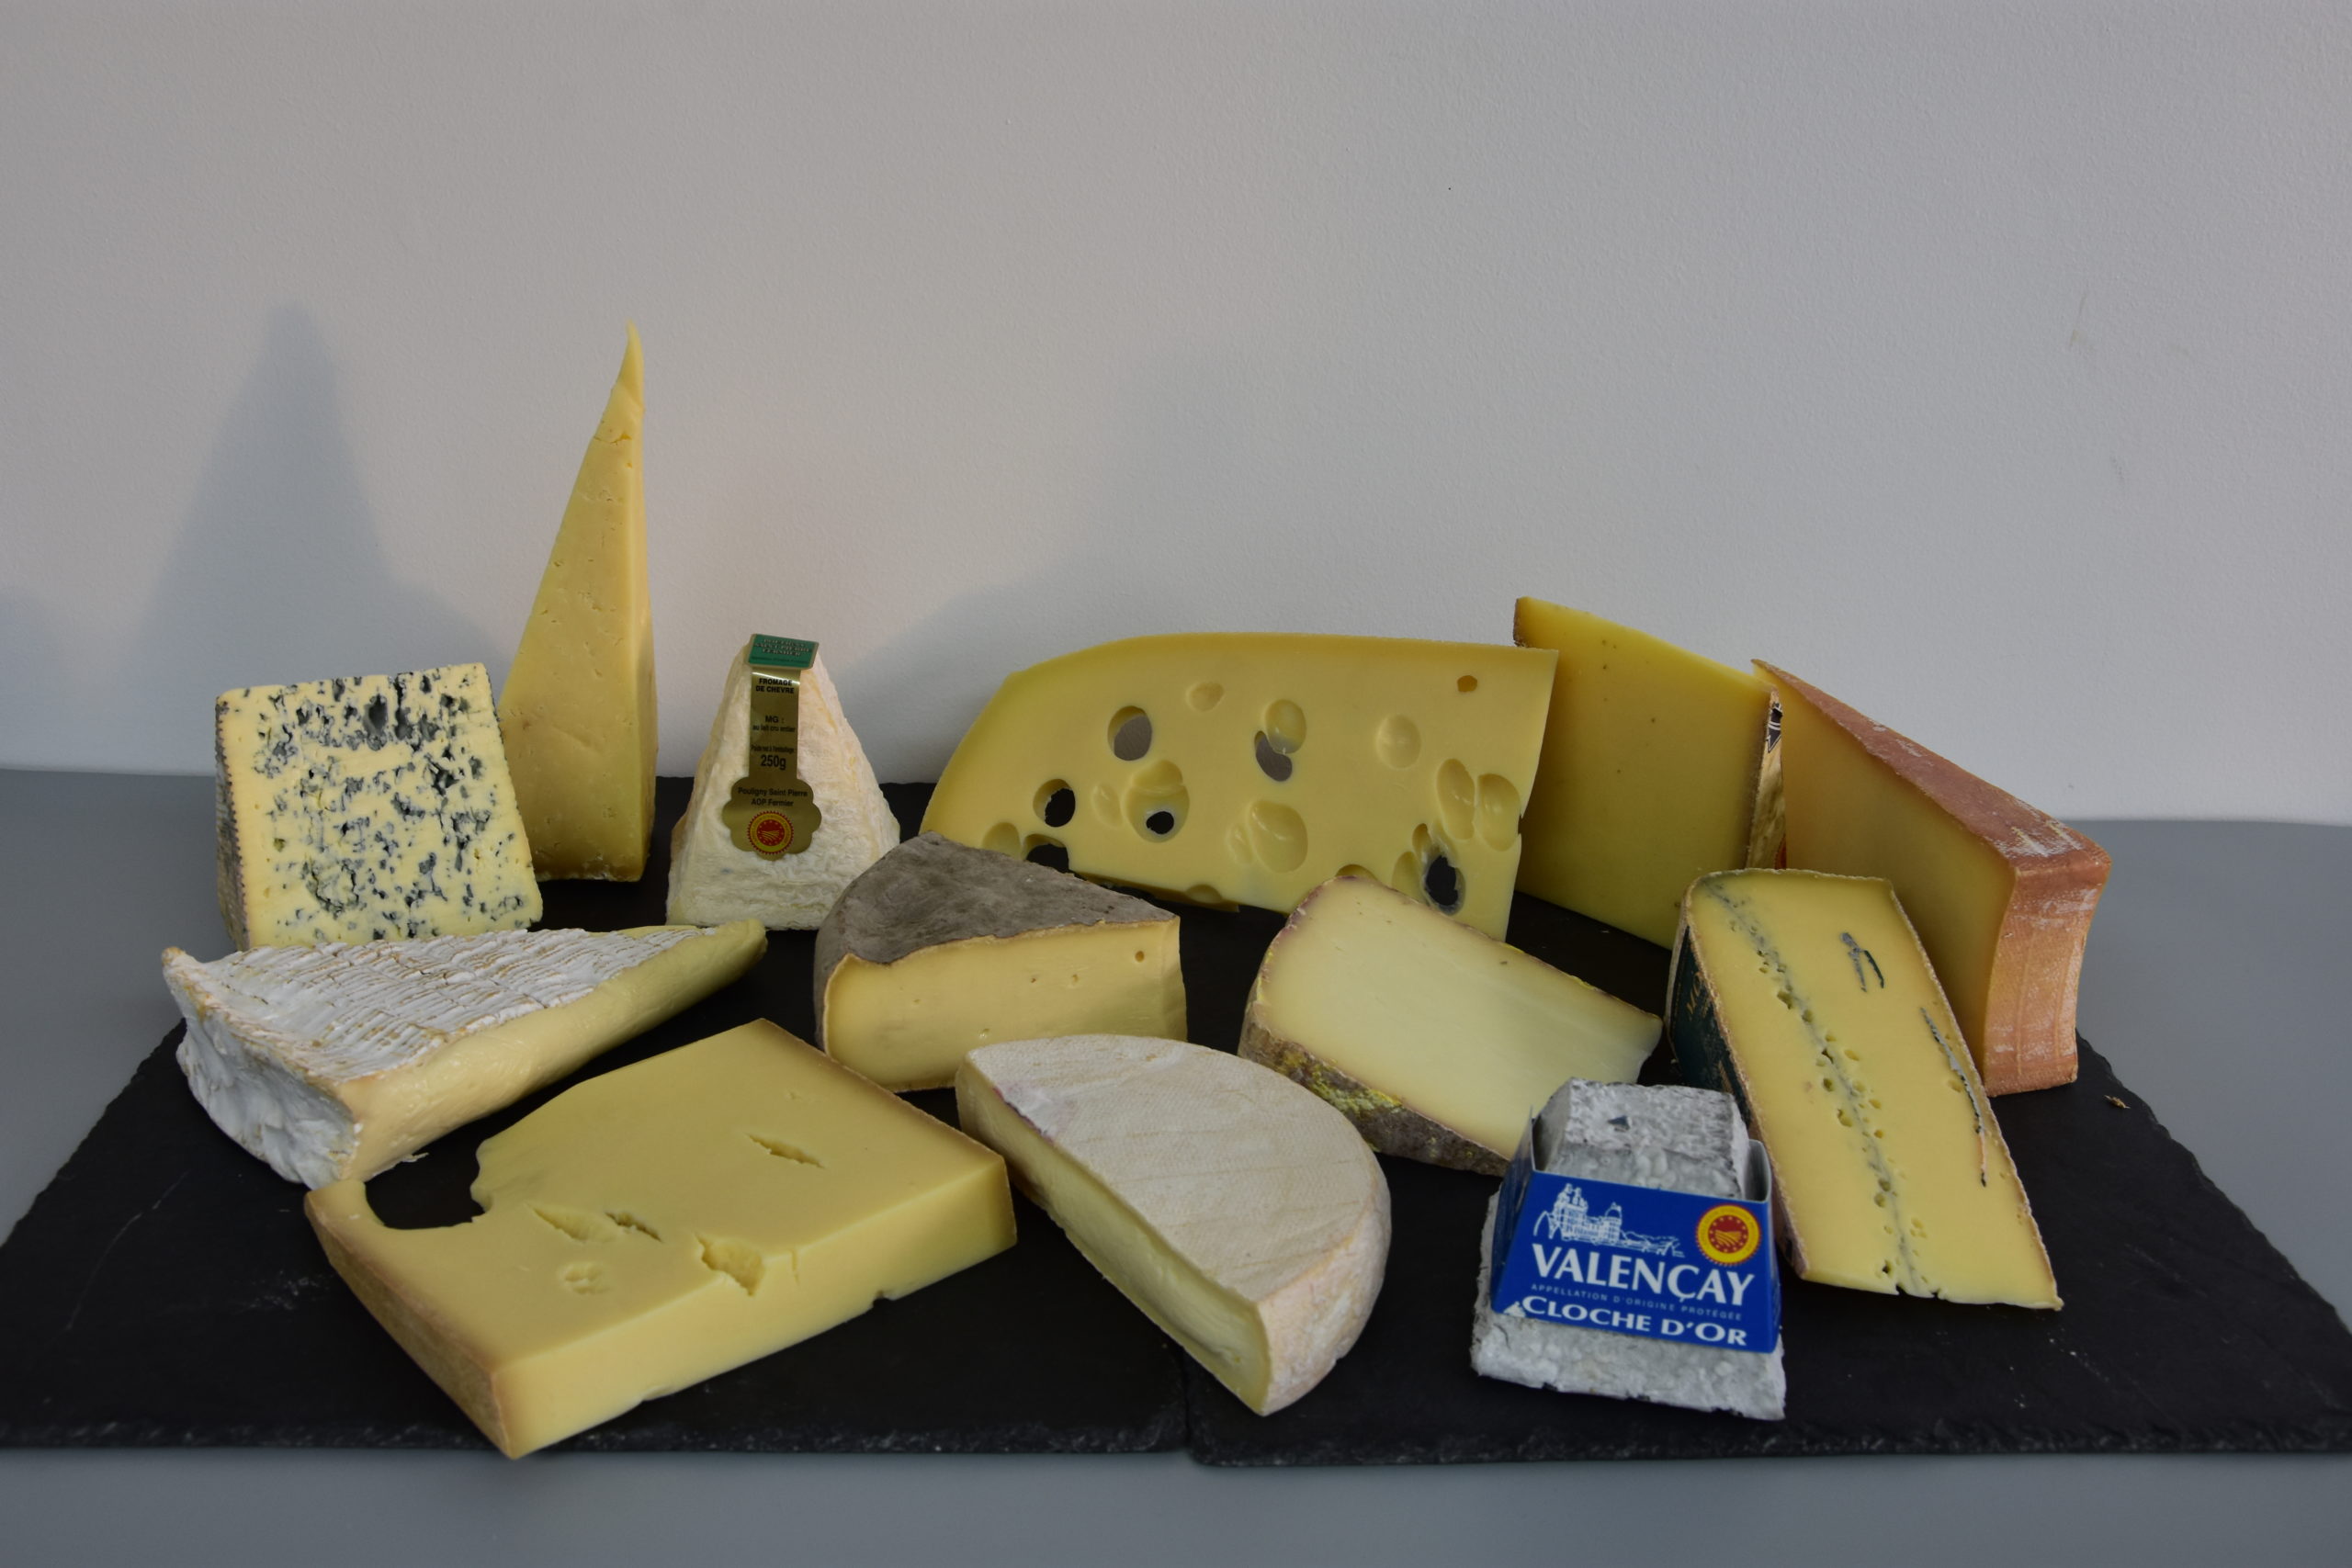 Plateau de fromages de France